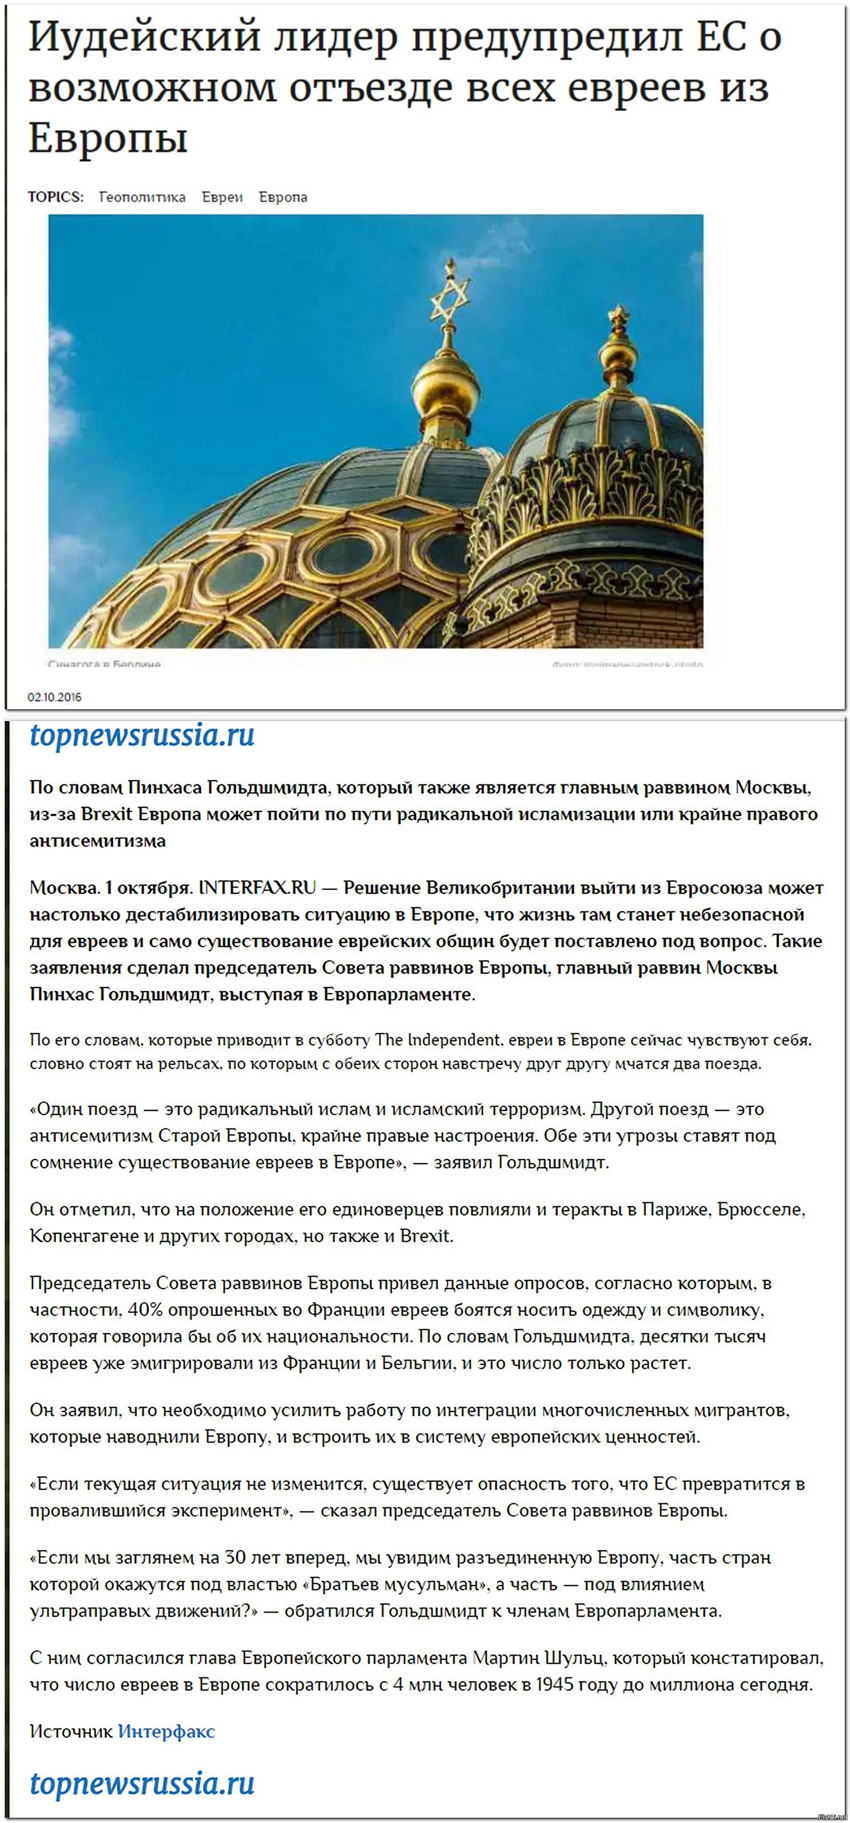 ???
[http://topnewsrussia.ru/iudejskij-lider-predupredil-es-o-vozmozhnom-otez...